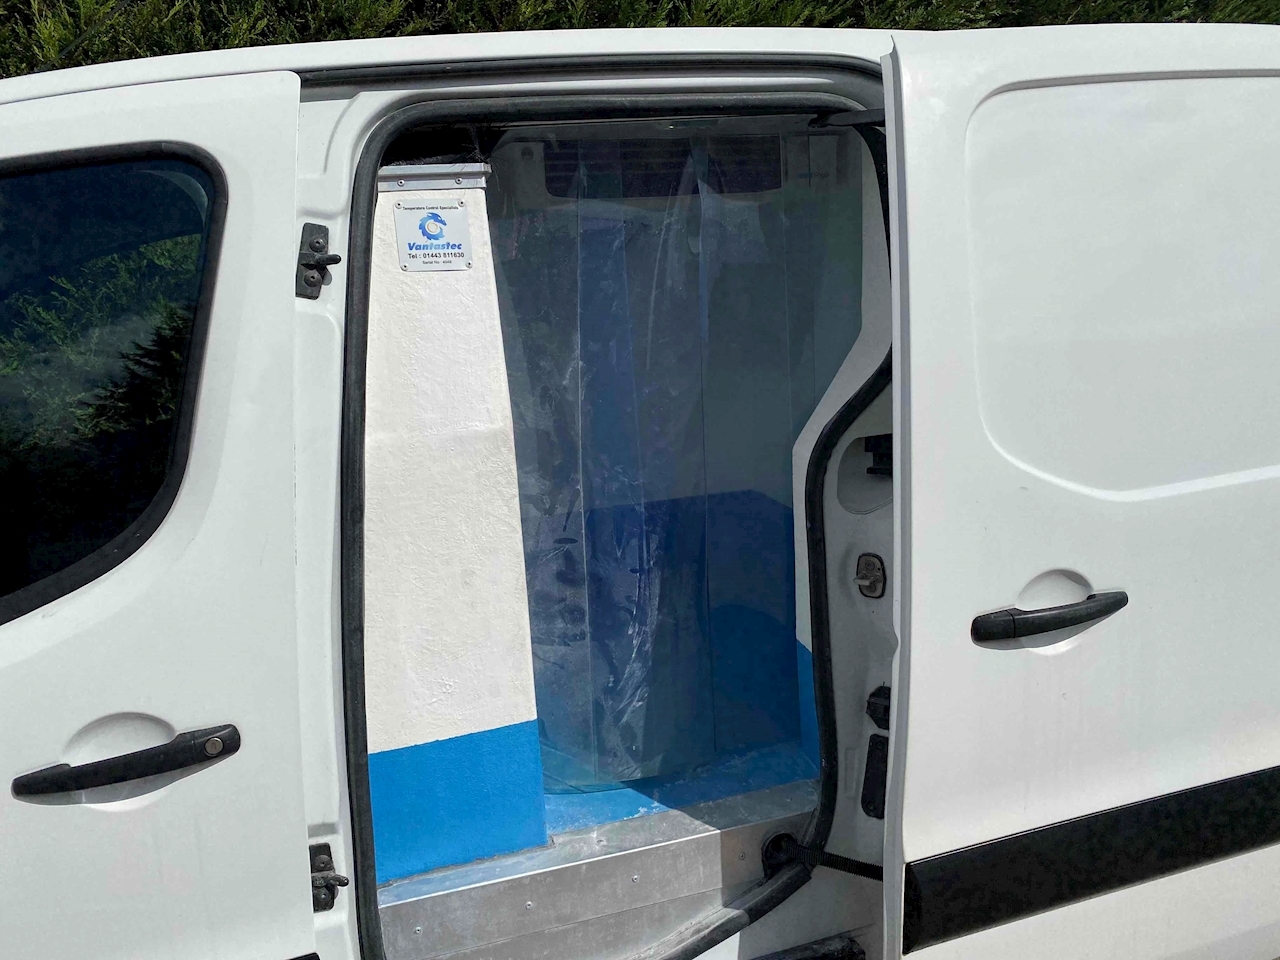 SE 750 1.6 HDI LWB L2 Refrigerated Van